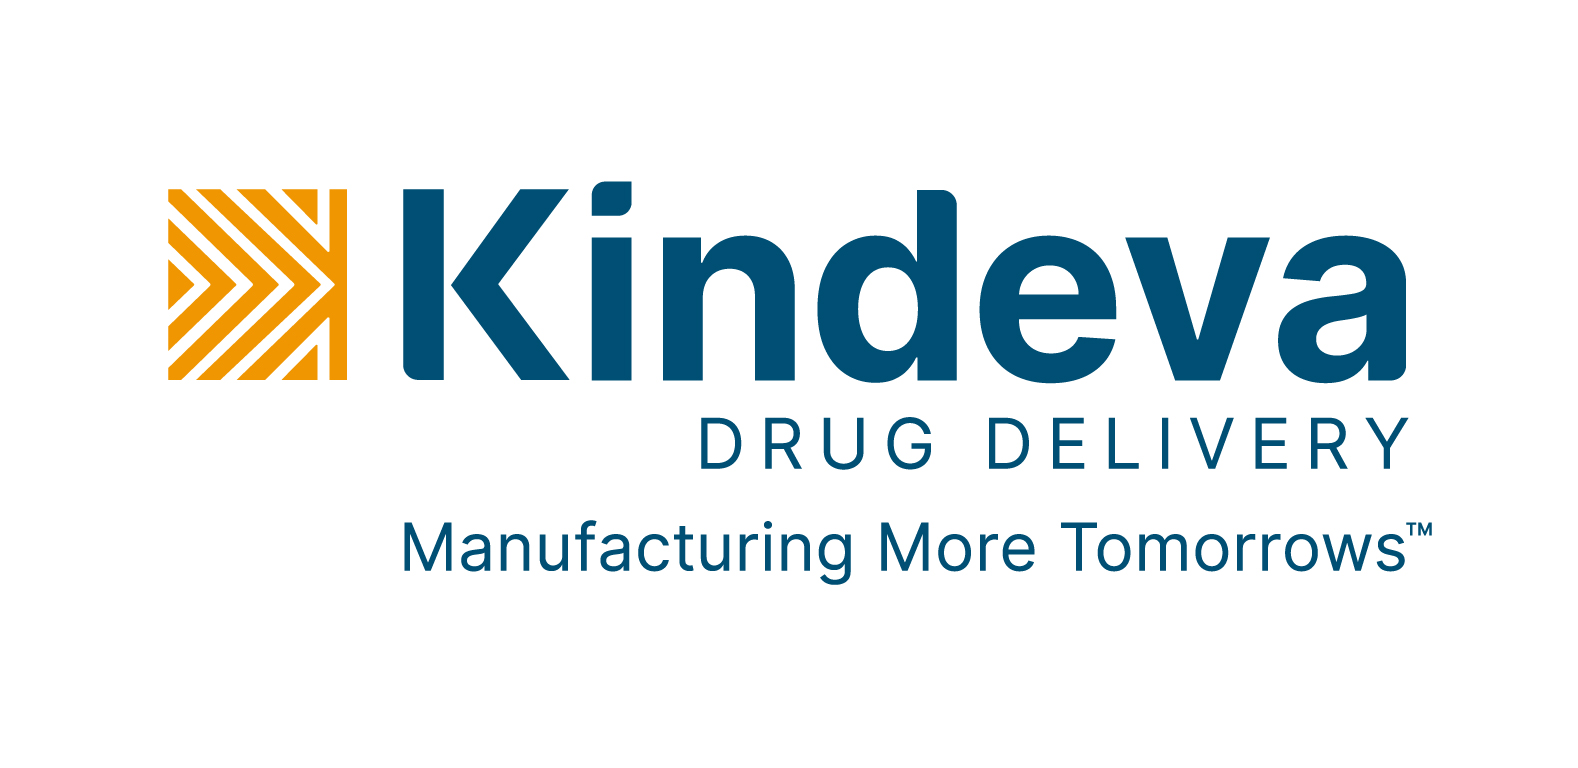 Kindeva Drug Delivery